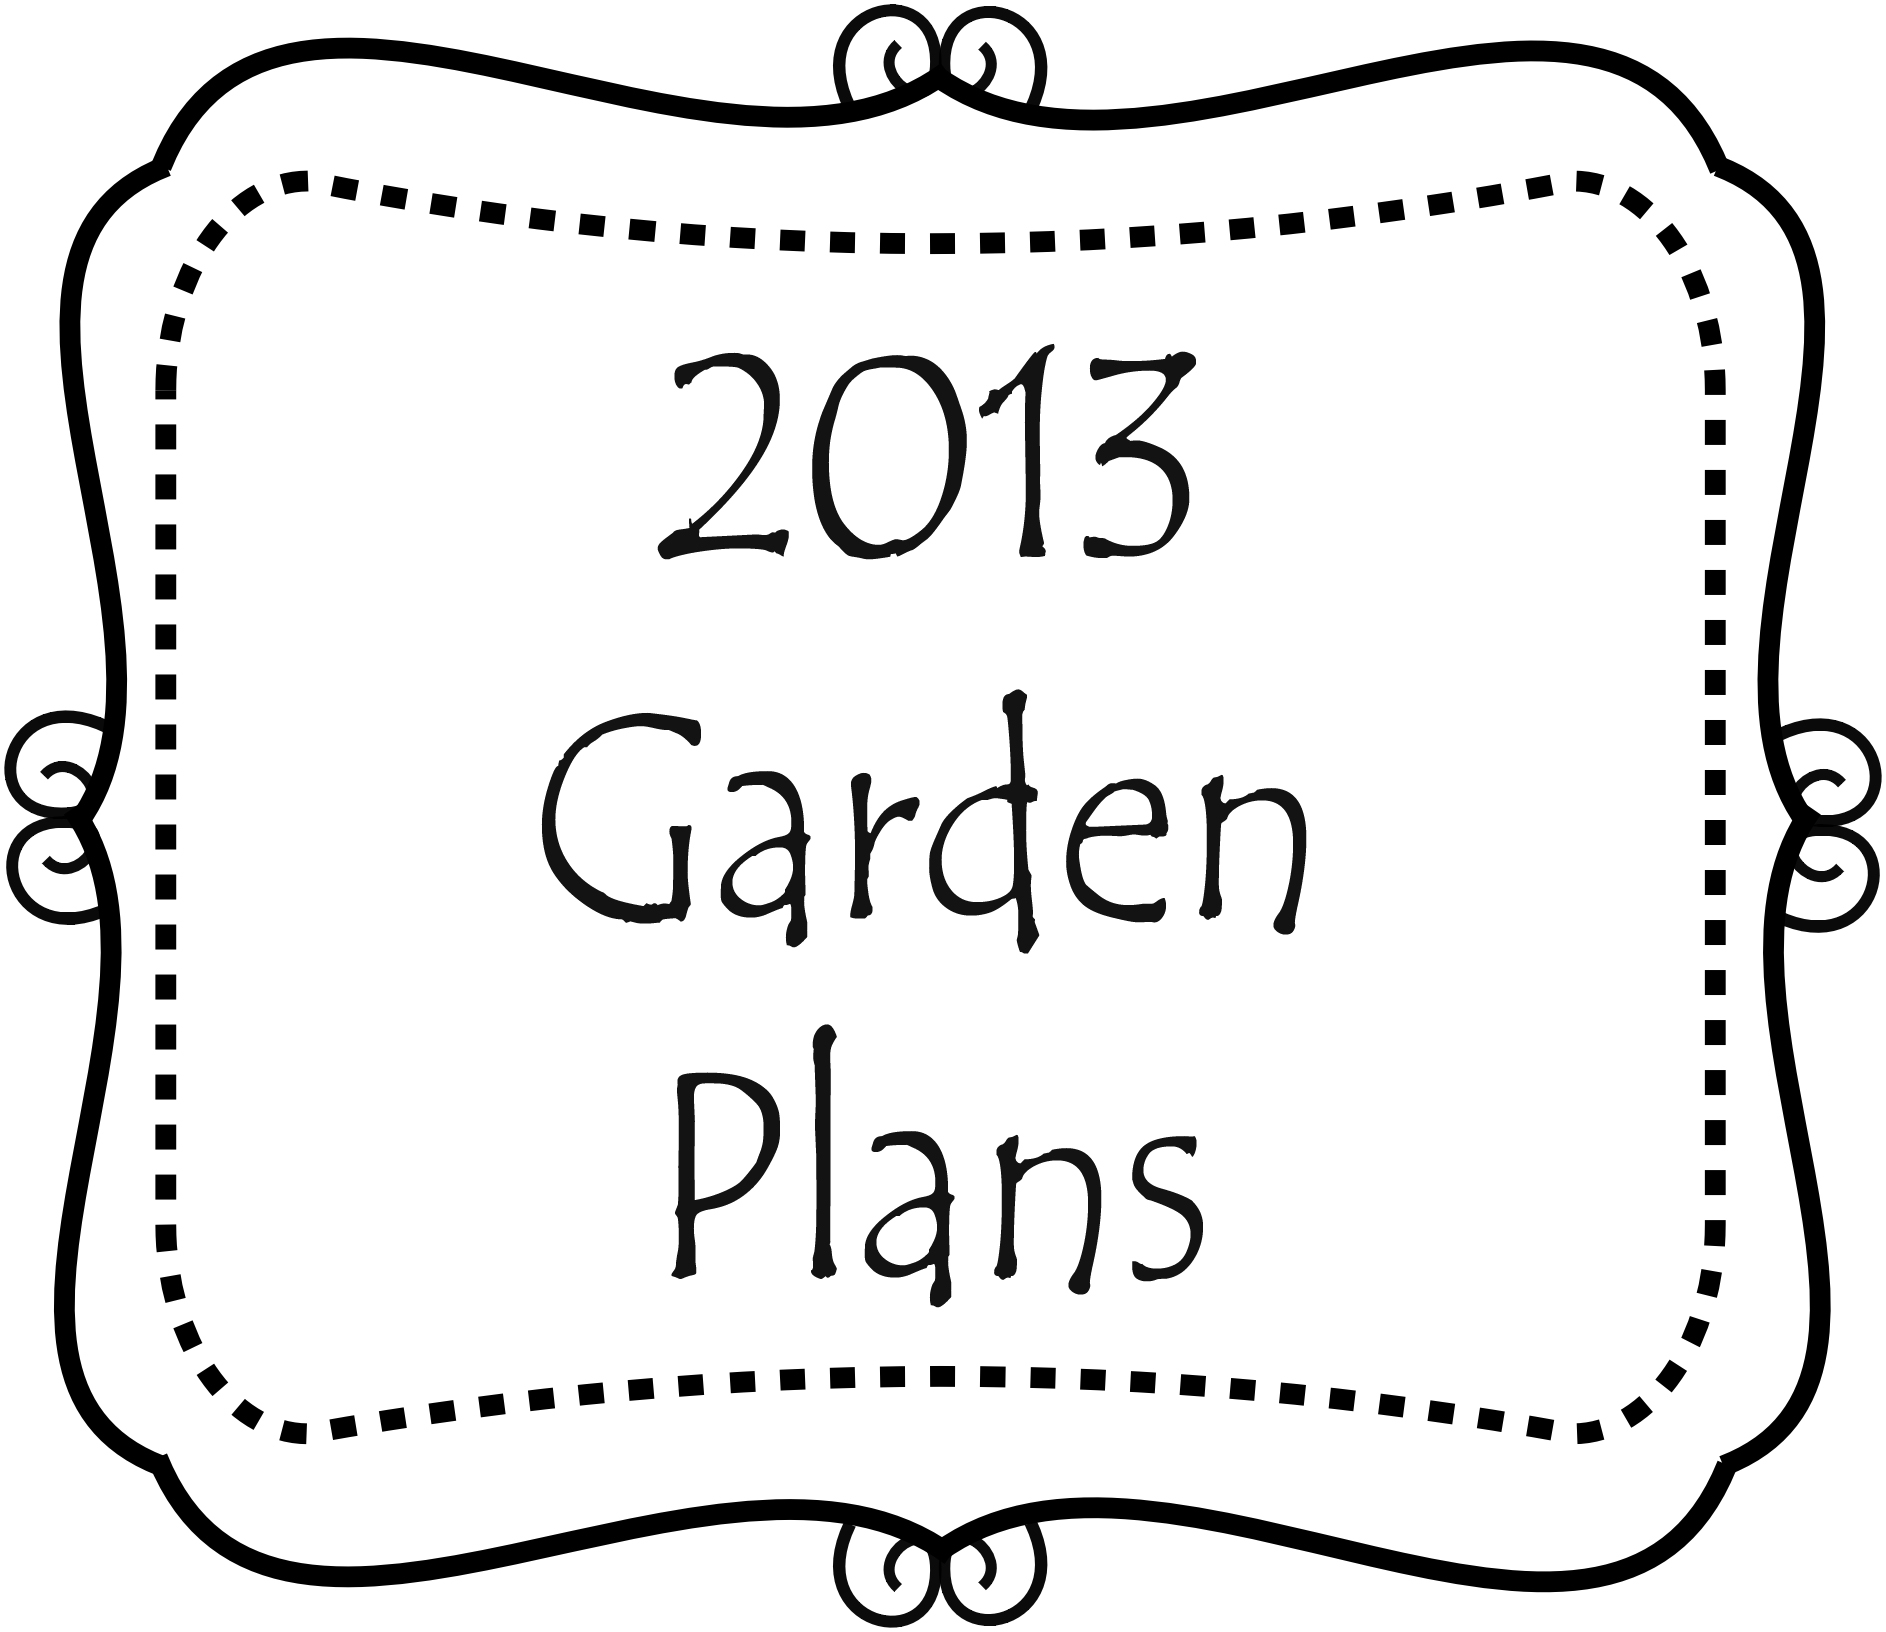 2013 Garden Plans